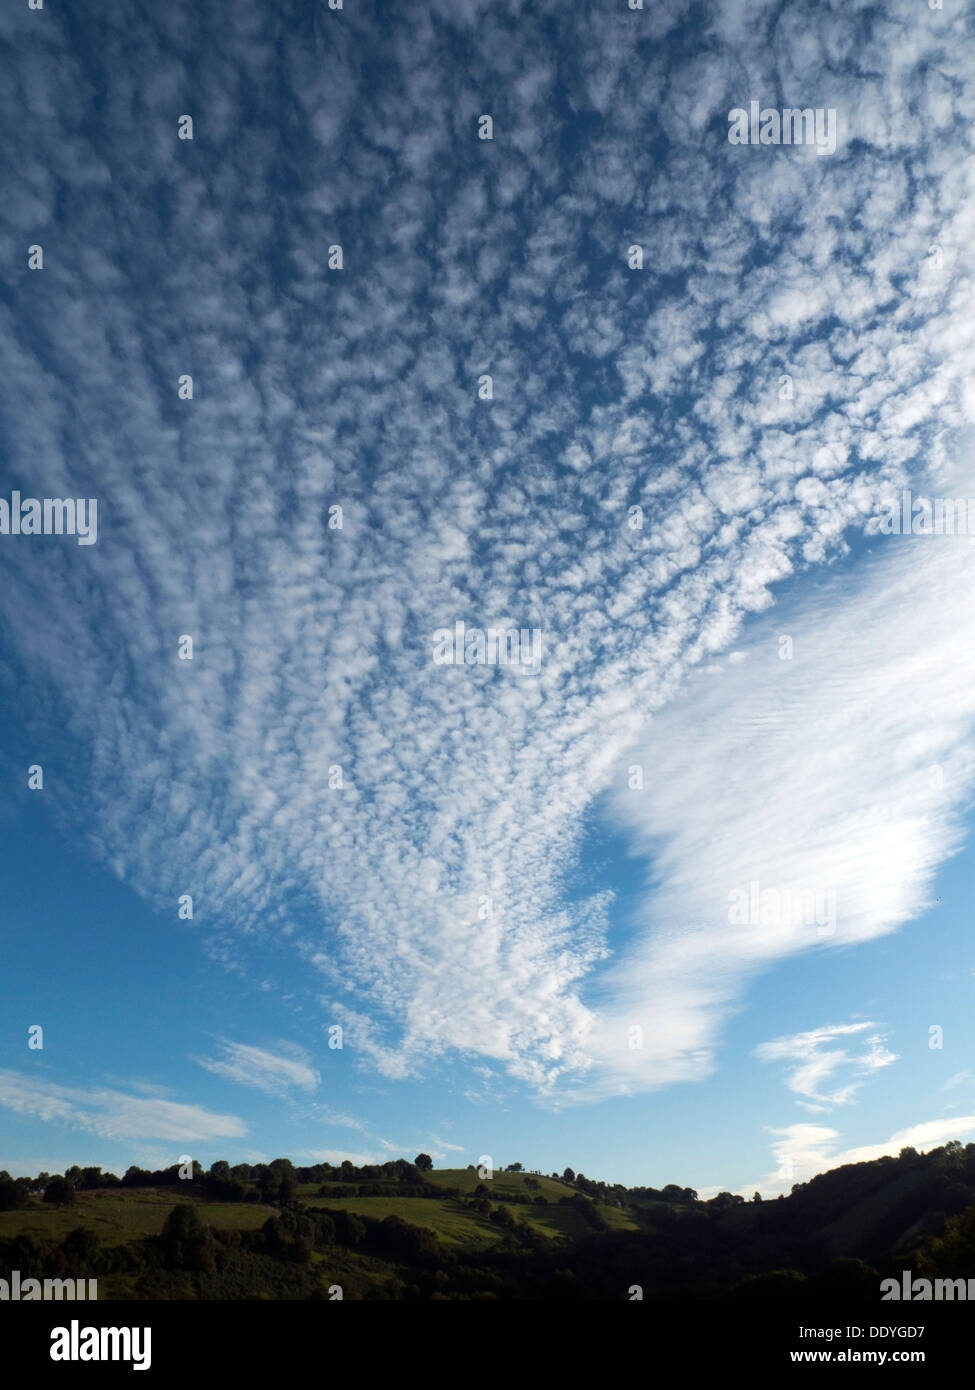 Cirrus und Cirrocumulus Wolken hoch über Hügeln in einem blauen Himmel an einem heißen Spätsommerabend im ländlichen Wales Großbritannien KATHY DEWITT Stockfoto